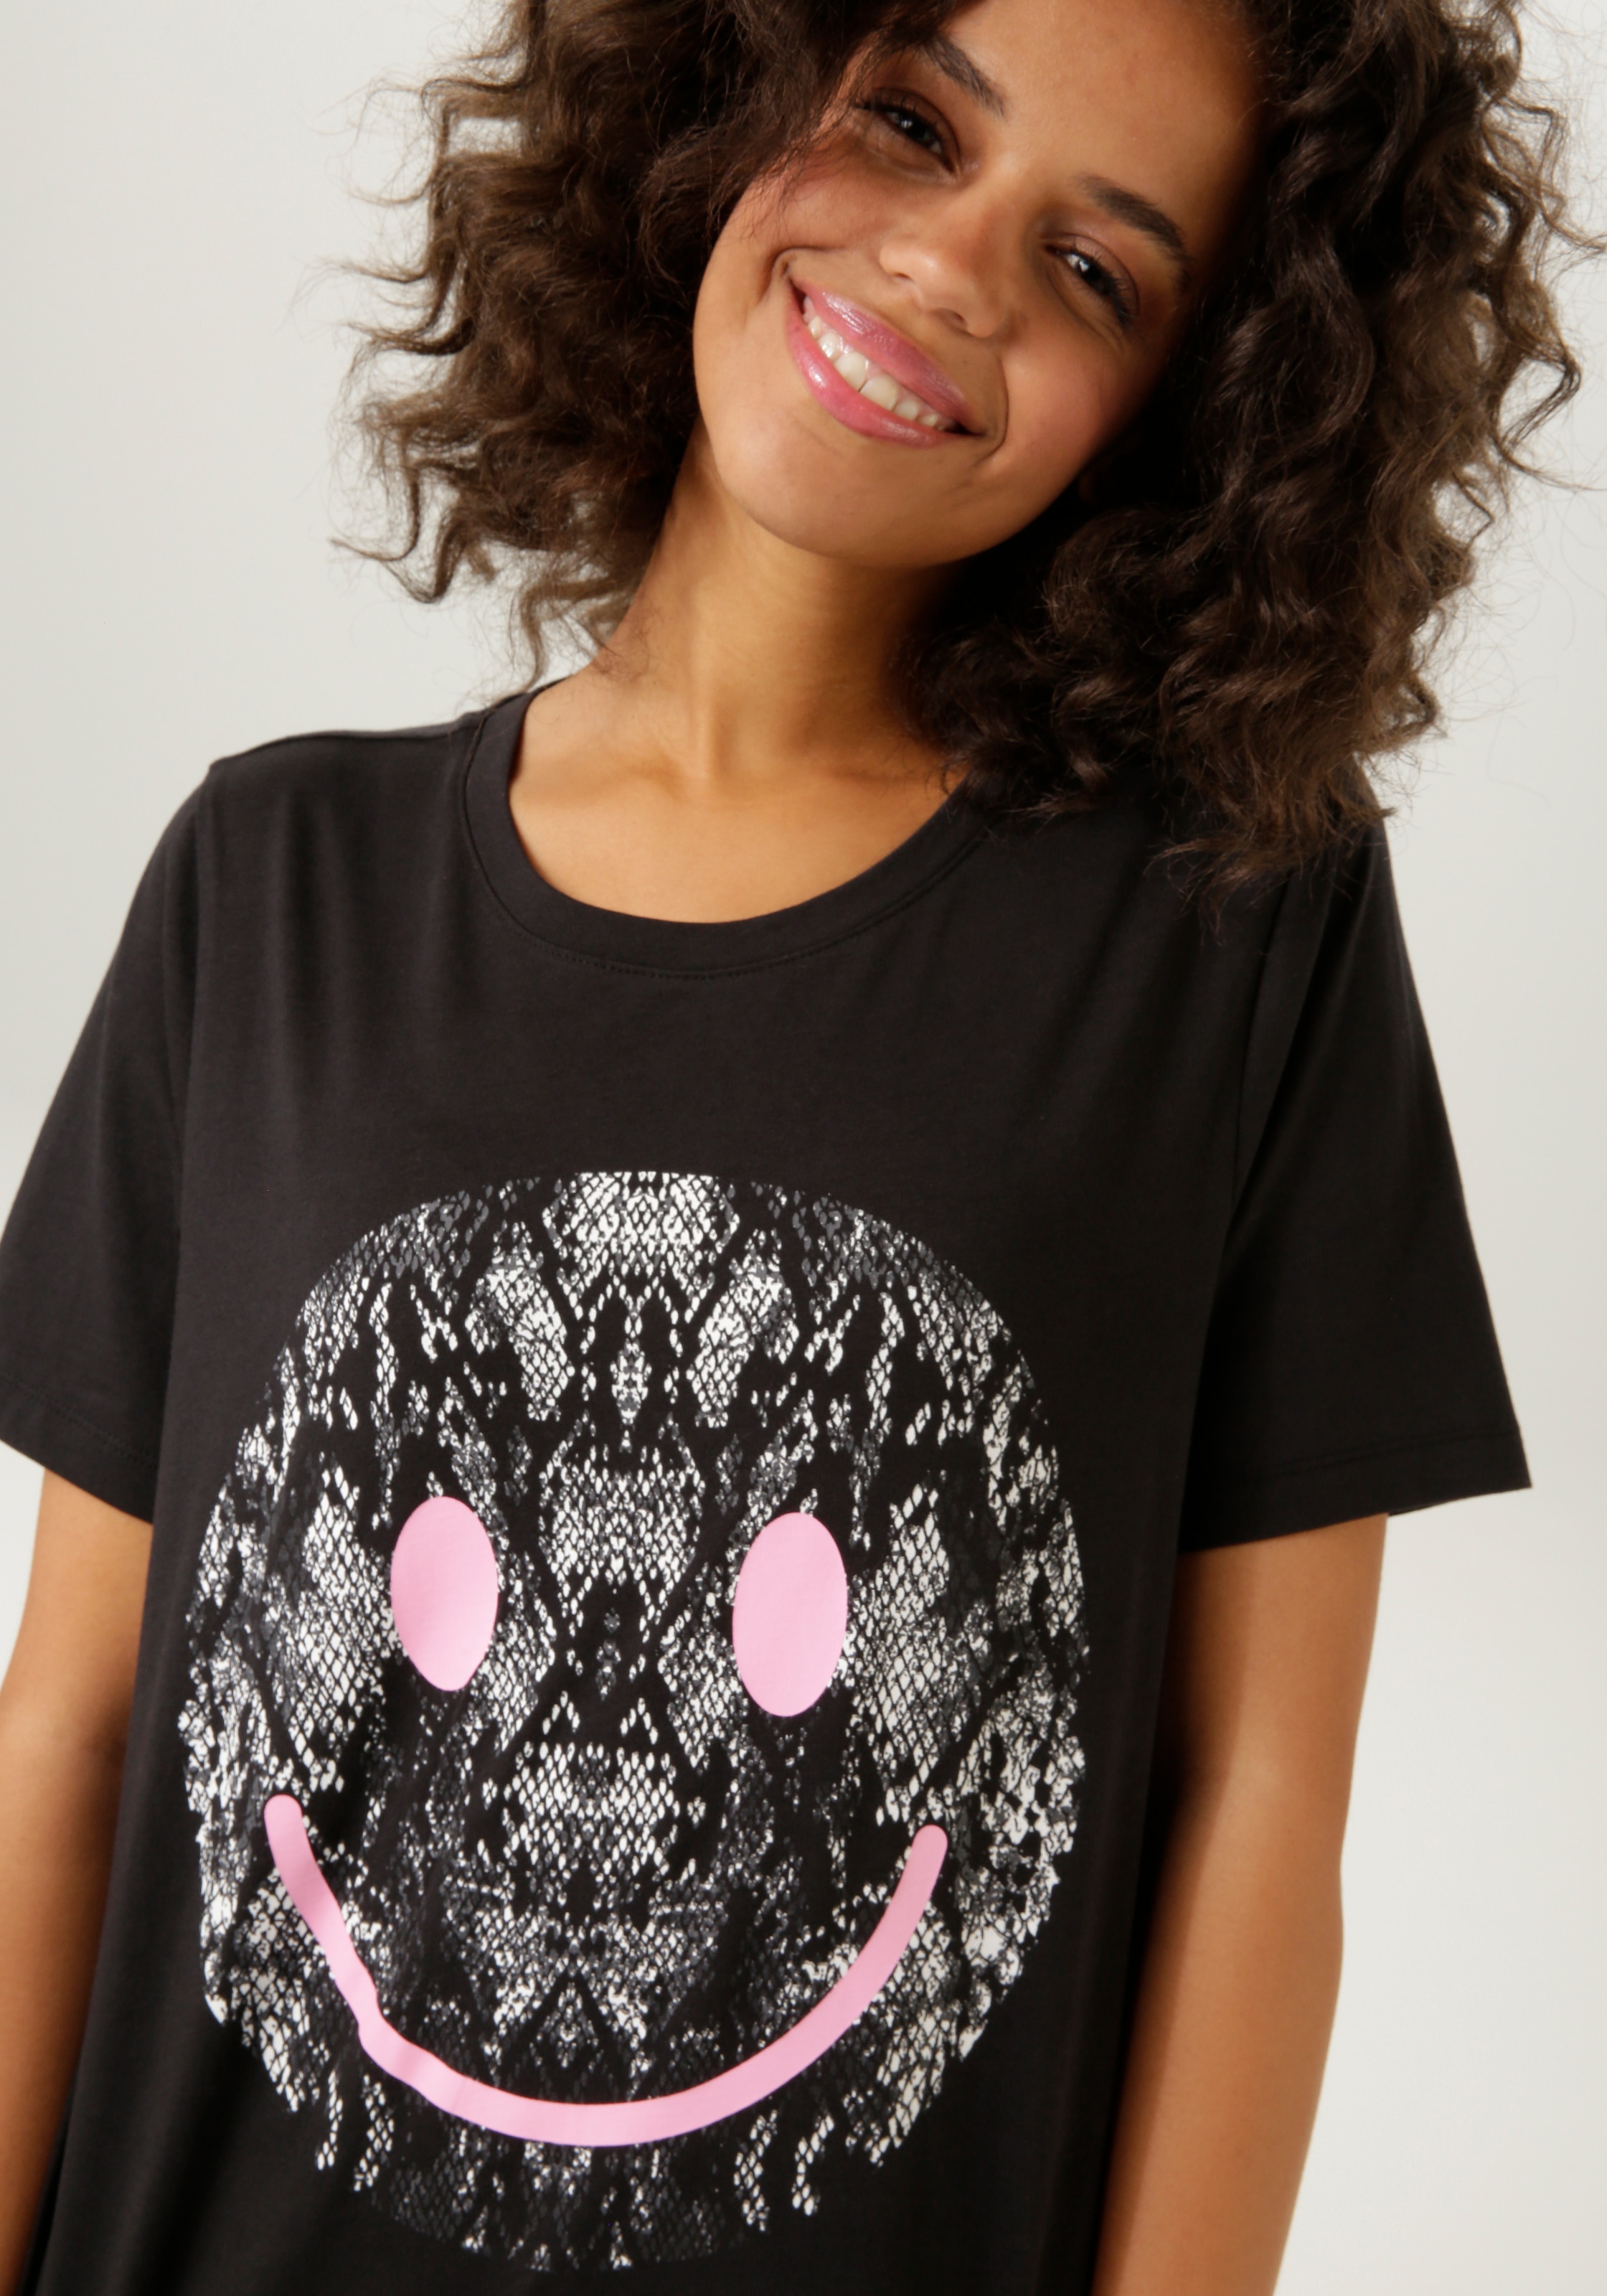 ♕ Aniston CASUAL versandkostenfrei im Smiley-Frontprint Animal-Look kaufen mit T-Shirt